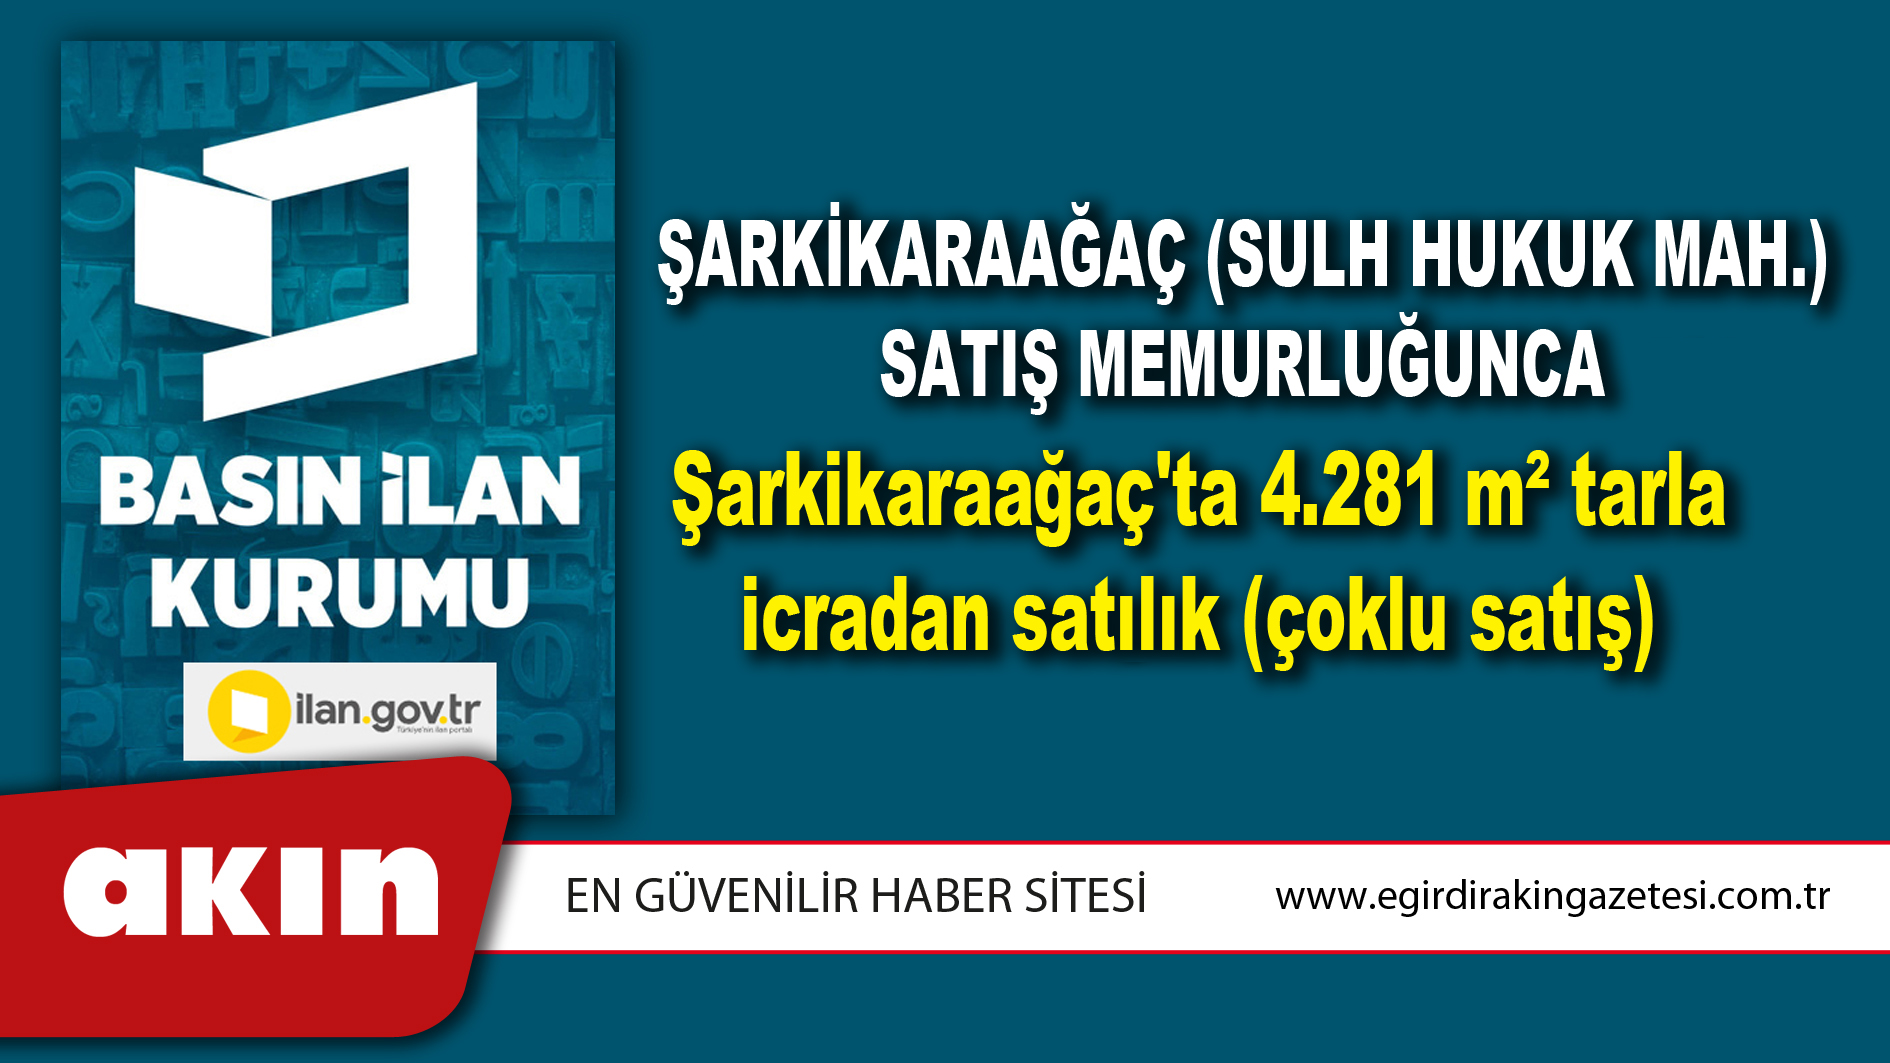 Şarkikaraağaç (Sulh Hukuk Mah.) Satış Memurluğunca Şarkikaraağaç'ta 4.281 m² tarla icradan satılık (çoklu satış)